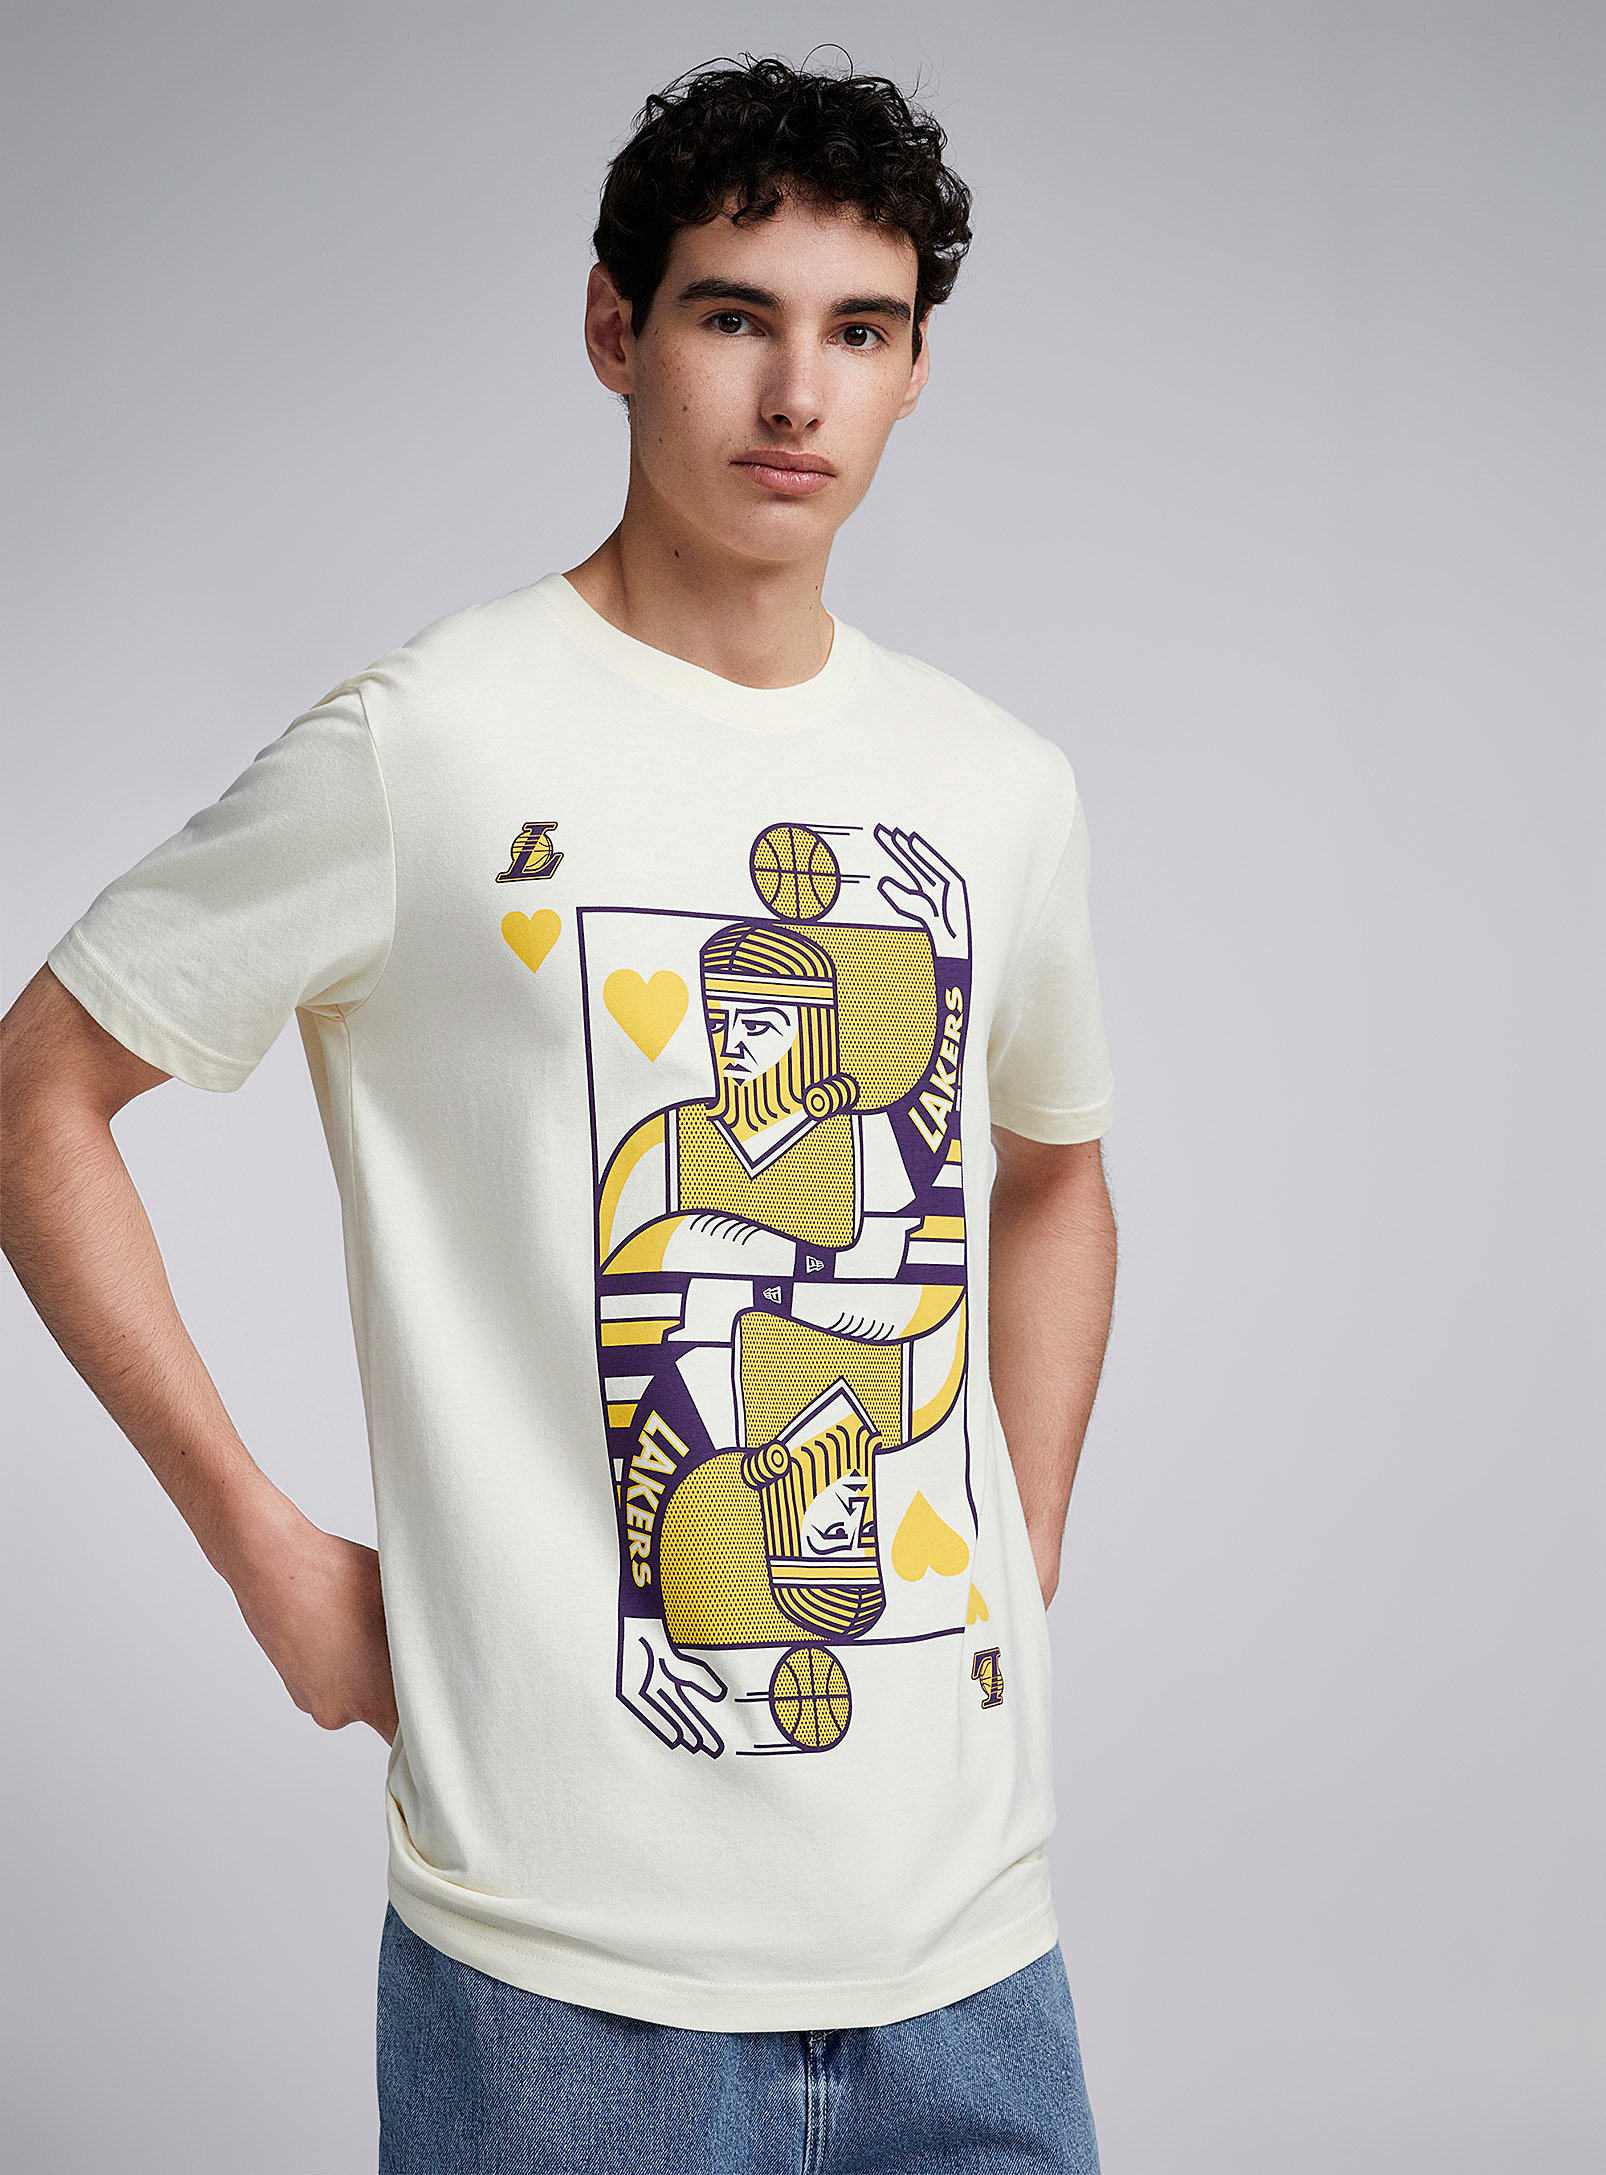 New Era - Men's Lakers play card T-shirt